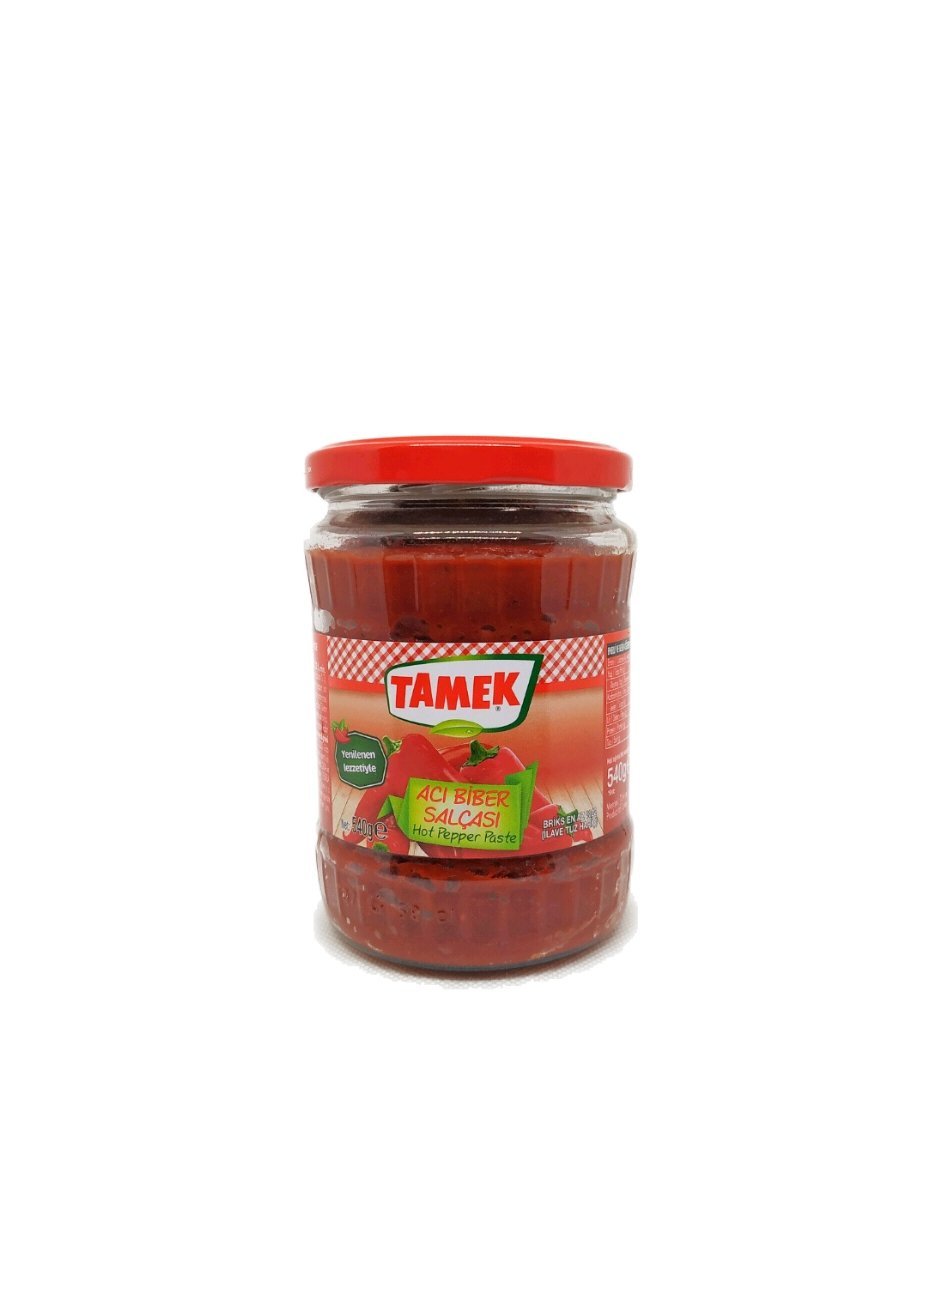 Produits orientaux en ligne : Tamek - Aci biber salcasi